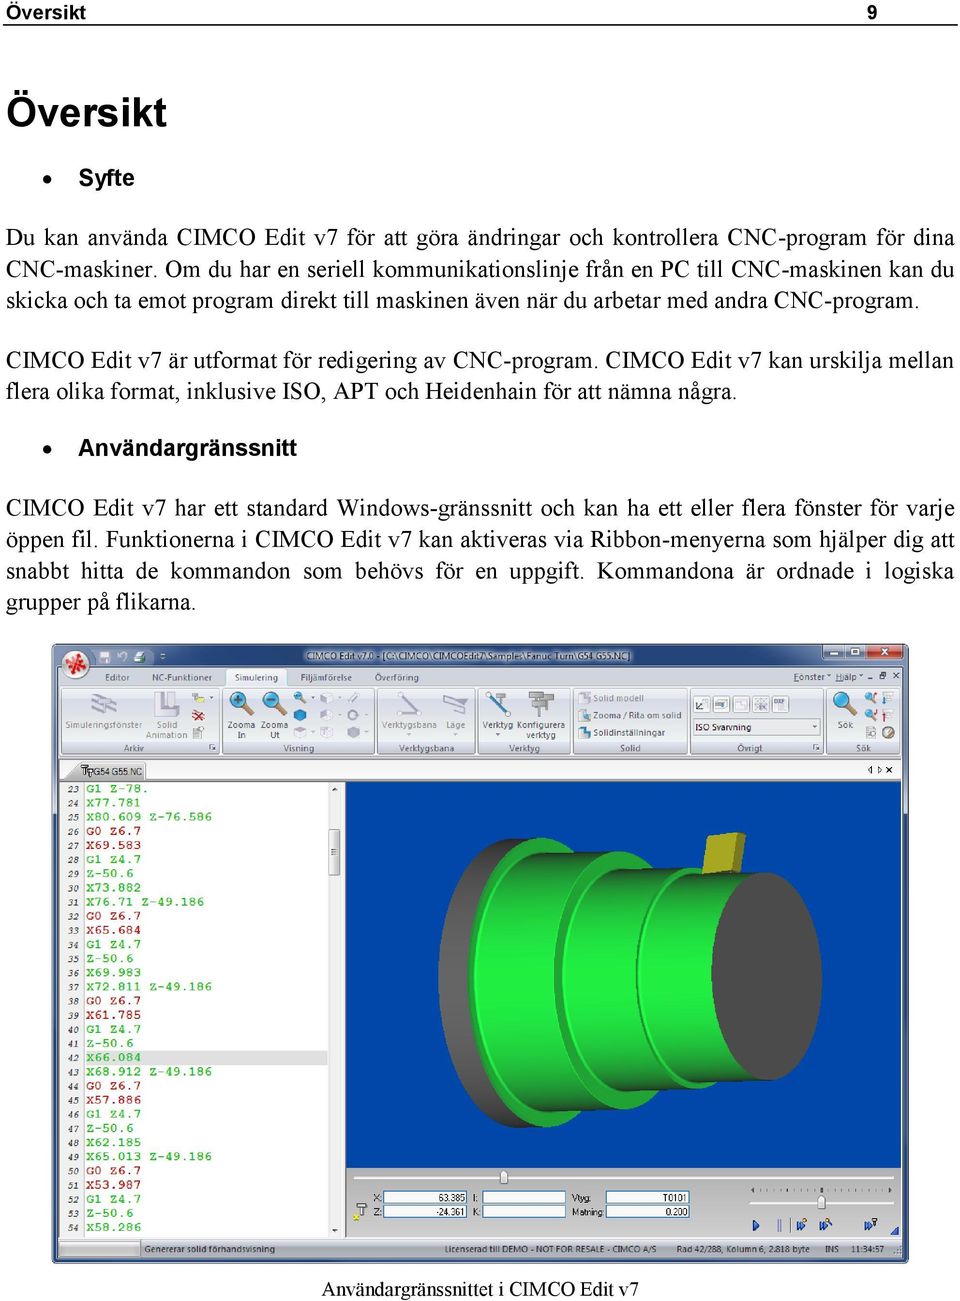 CIMCO Edit v7 är utformat för redigering av CNC-program. CIMCO Edit v7 kan urskilja mellan flera olika format, inklusive ISO, APT och Heidenhain för att nämna några.